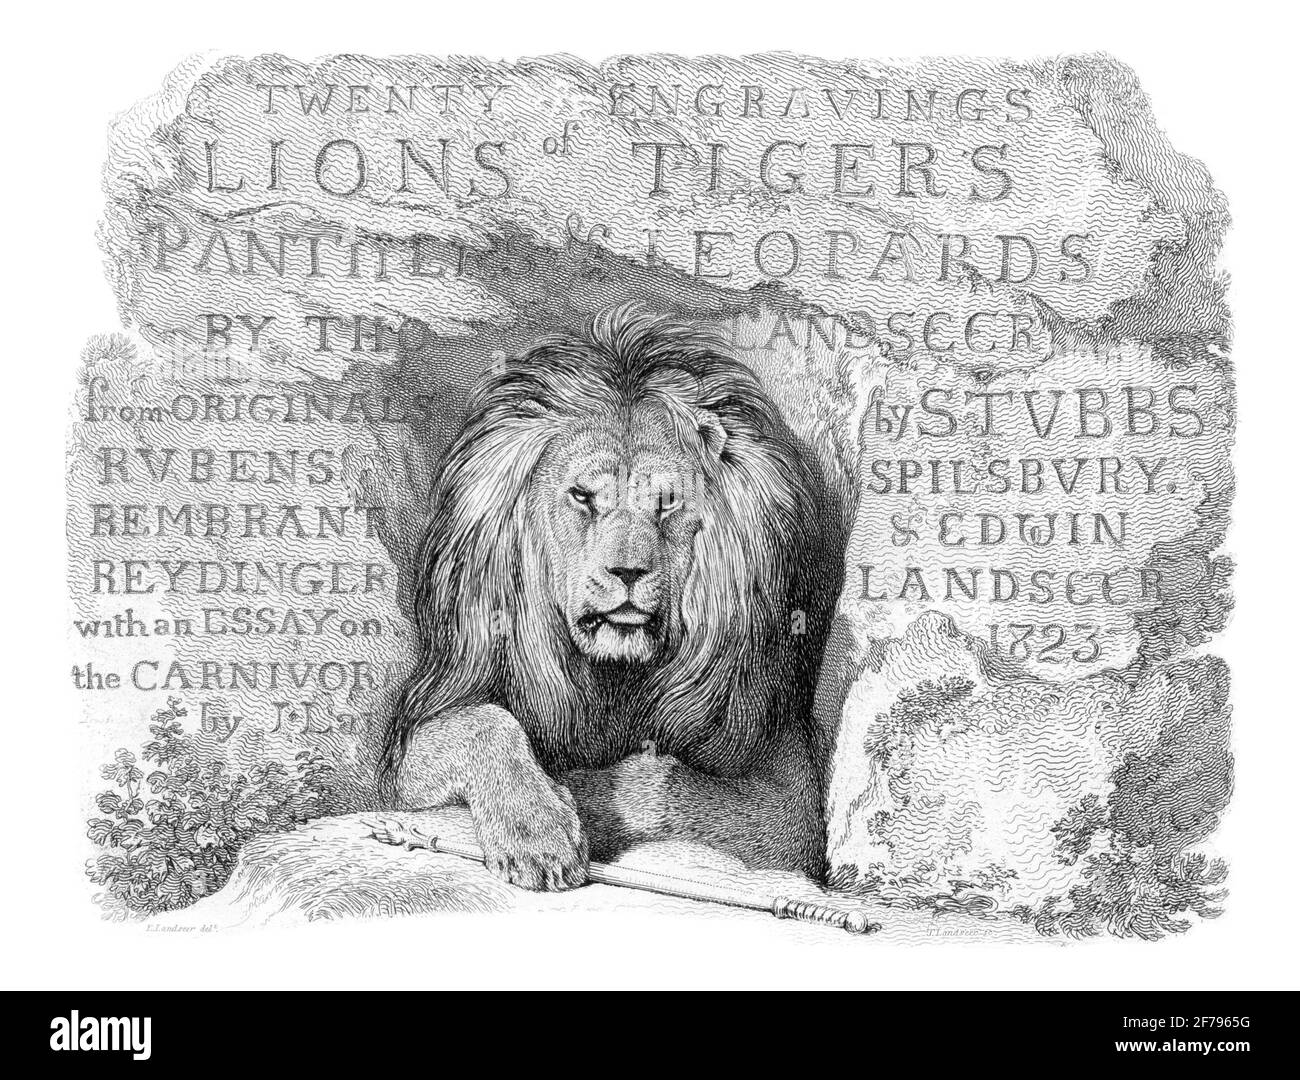 Ilustración grabada de león africano masculino Foto de stock